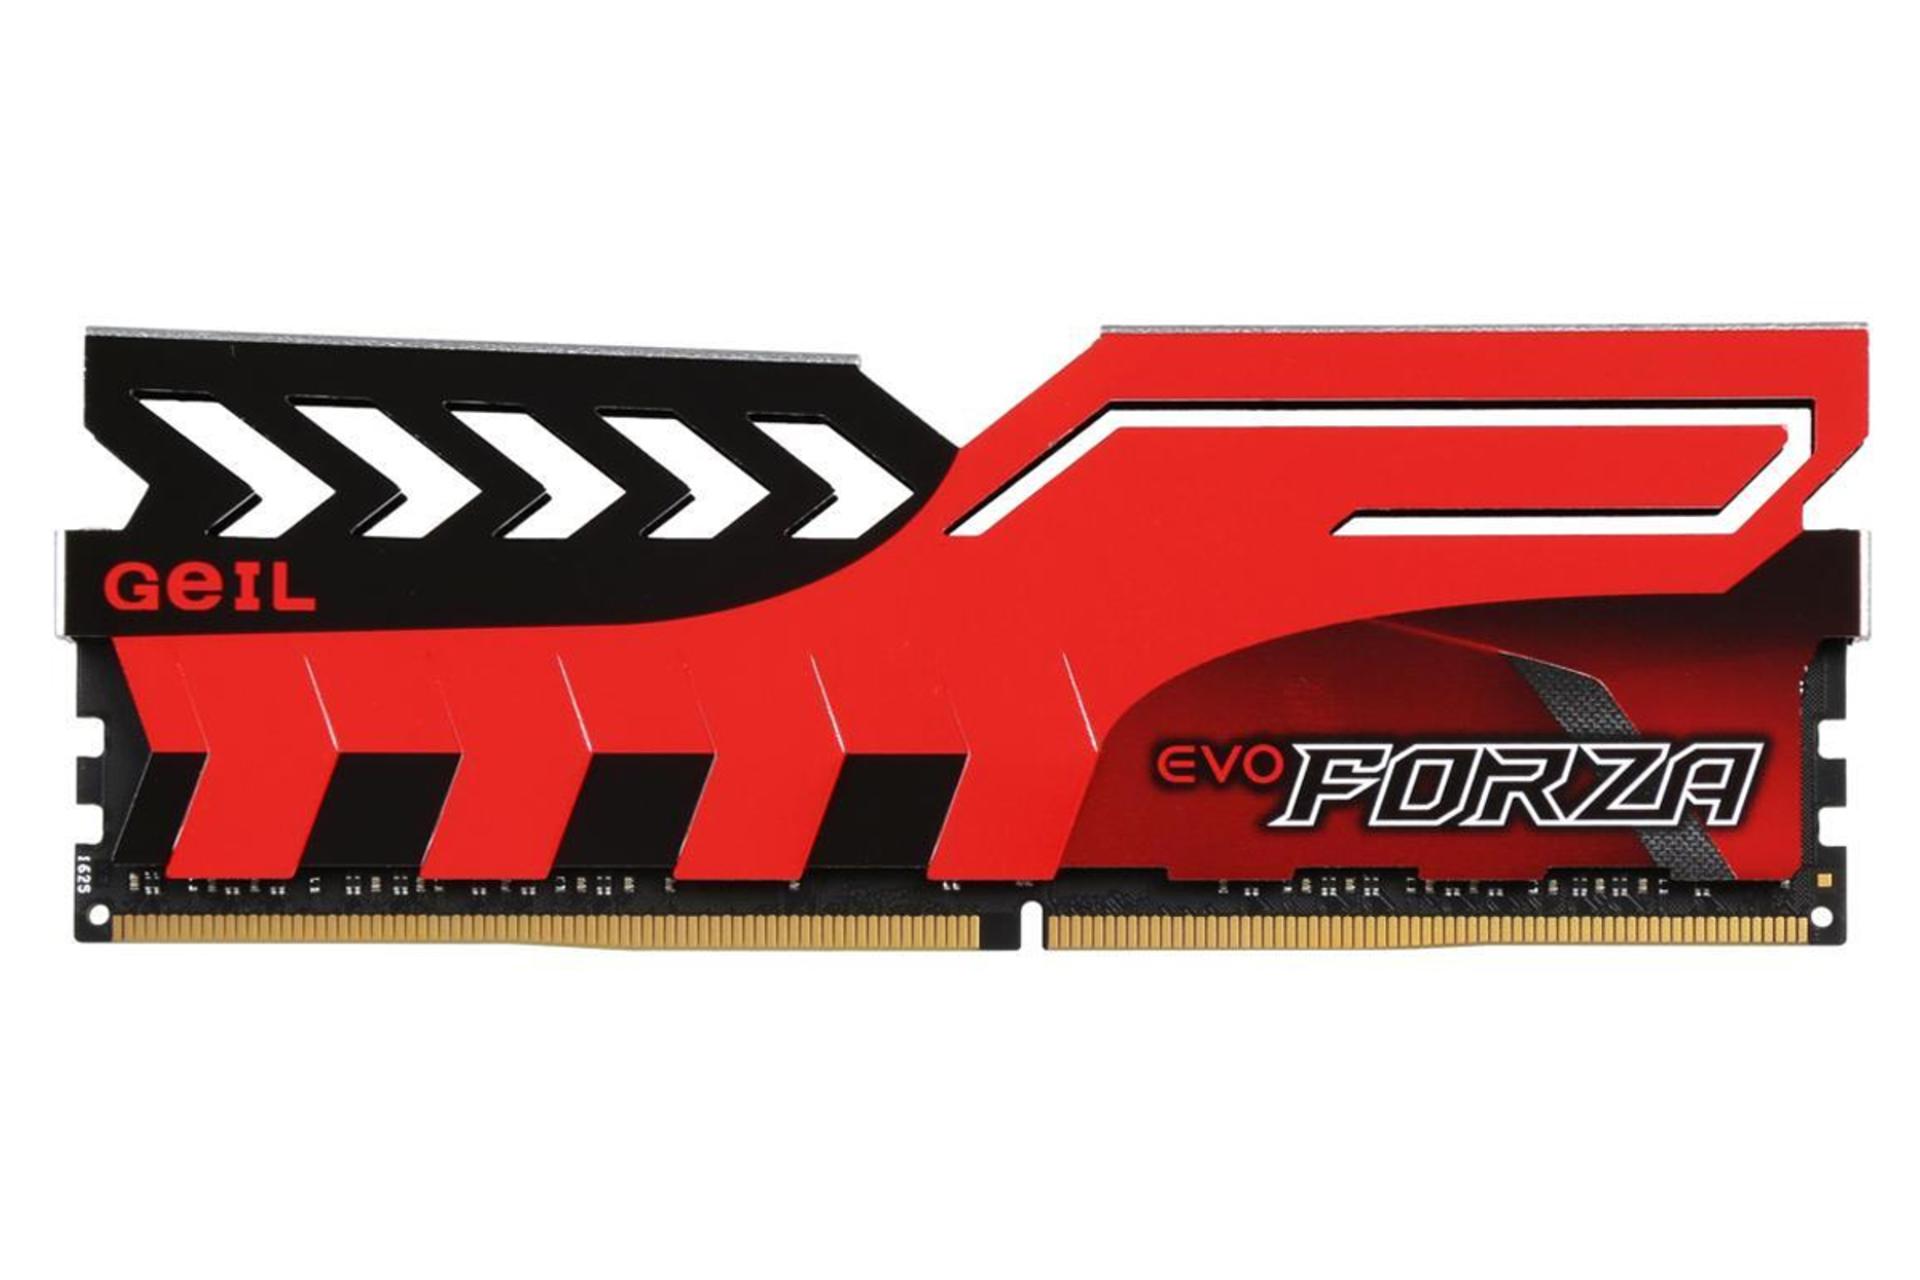 رم گیل EVO Forza ظرفیت 16 گیگابایت از نوع DDR4-3000